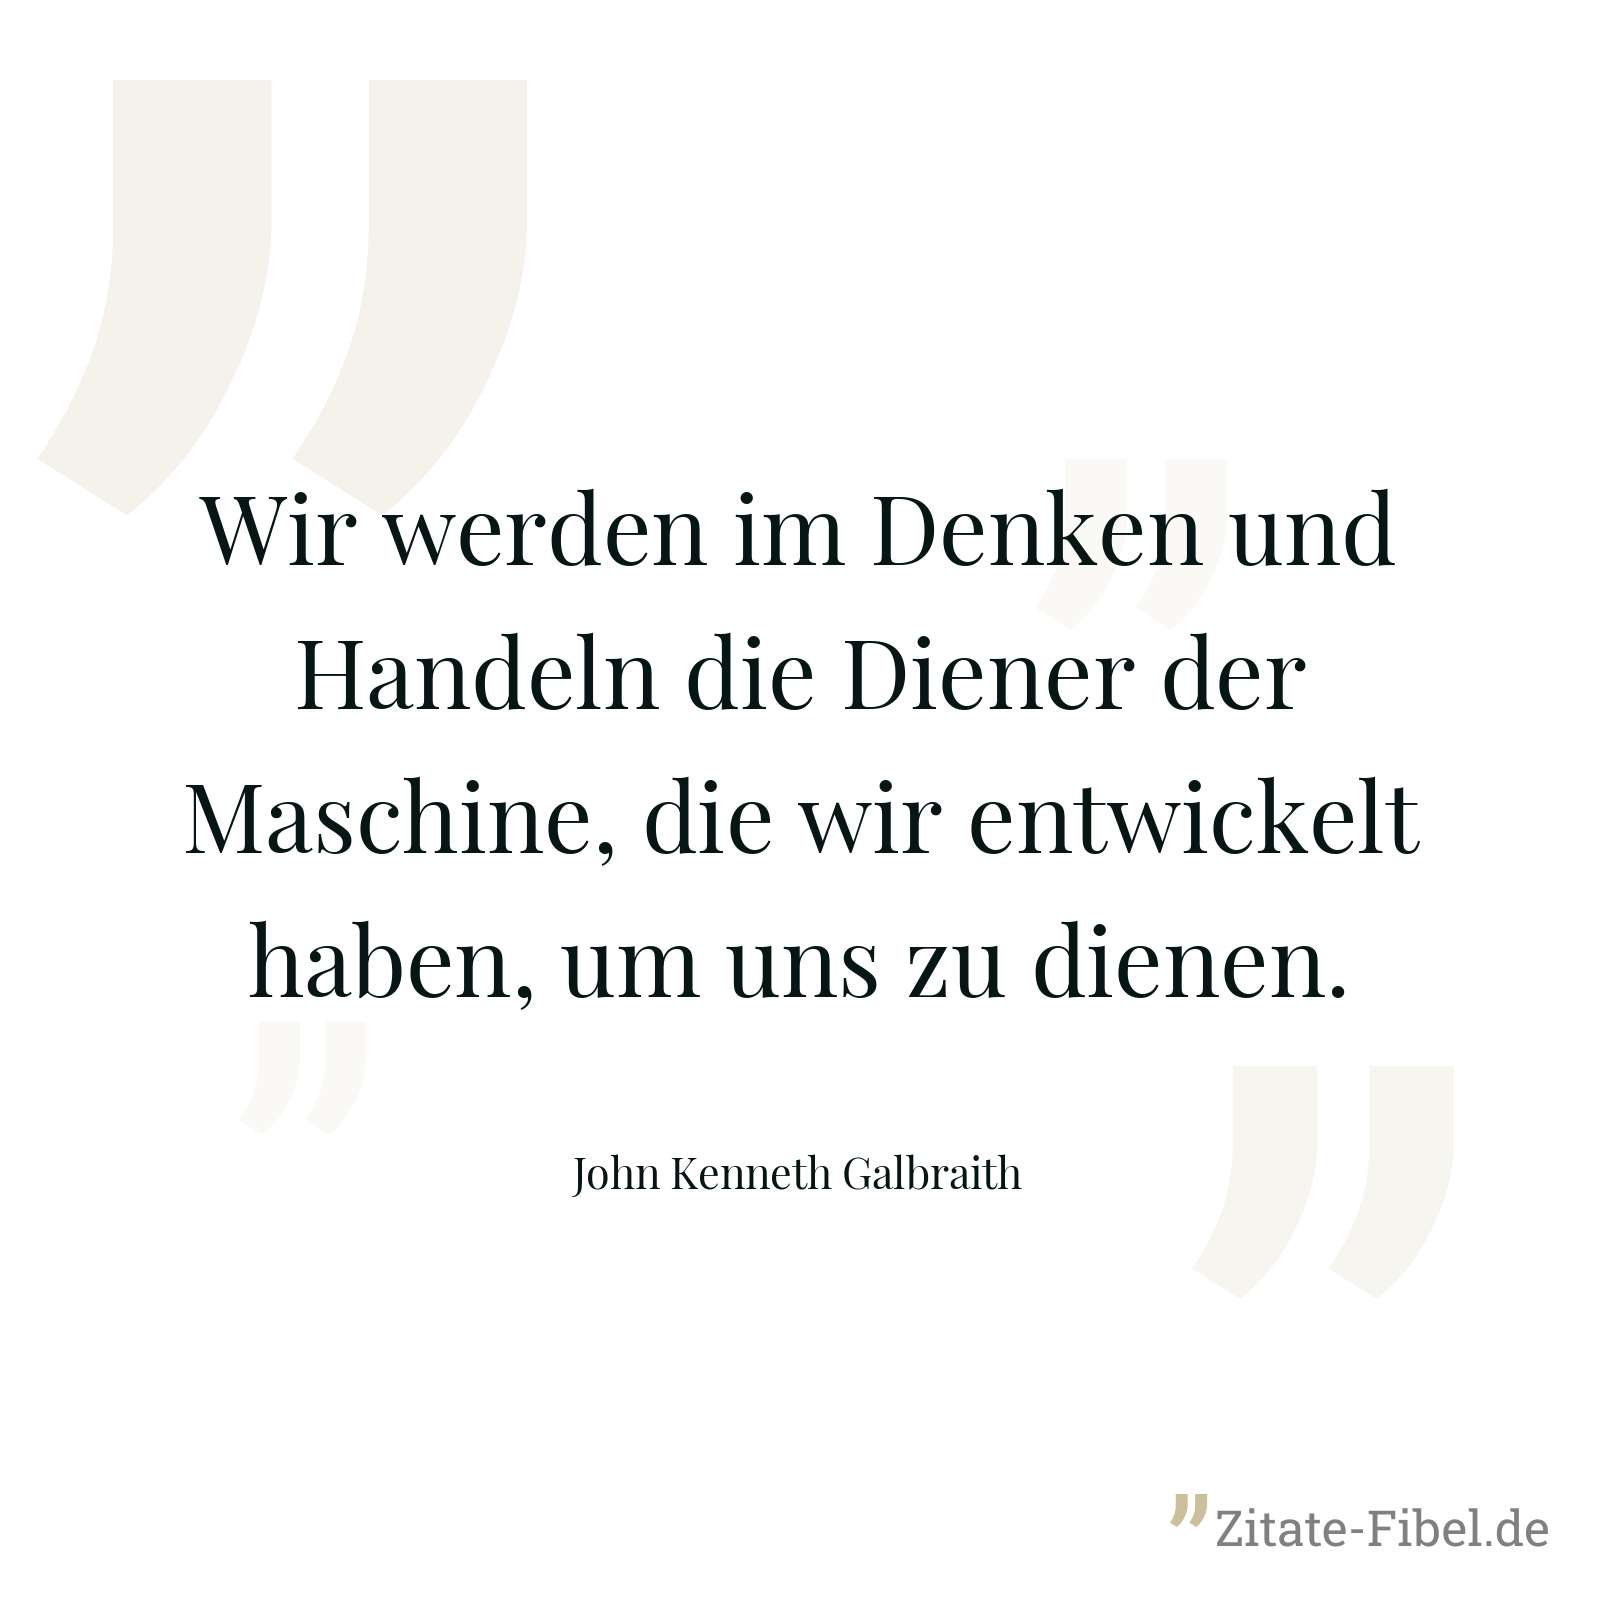 Wir werden im Denken und Handeln die Diener der Maschine, die wir entwickelt haben, um uns zu dienen. - John Kenneth Galbraith